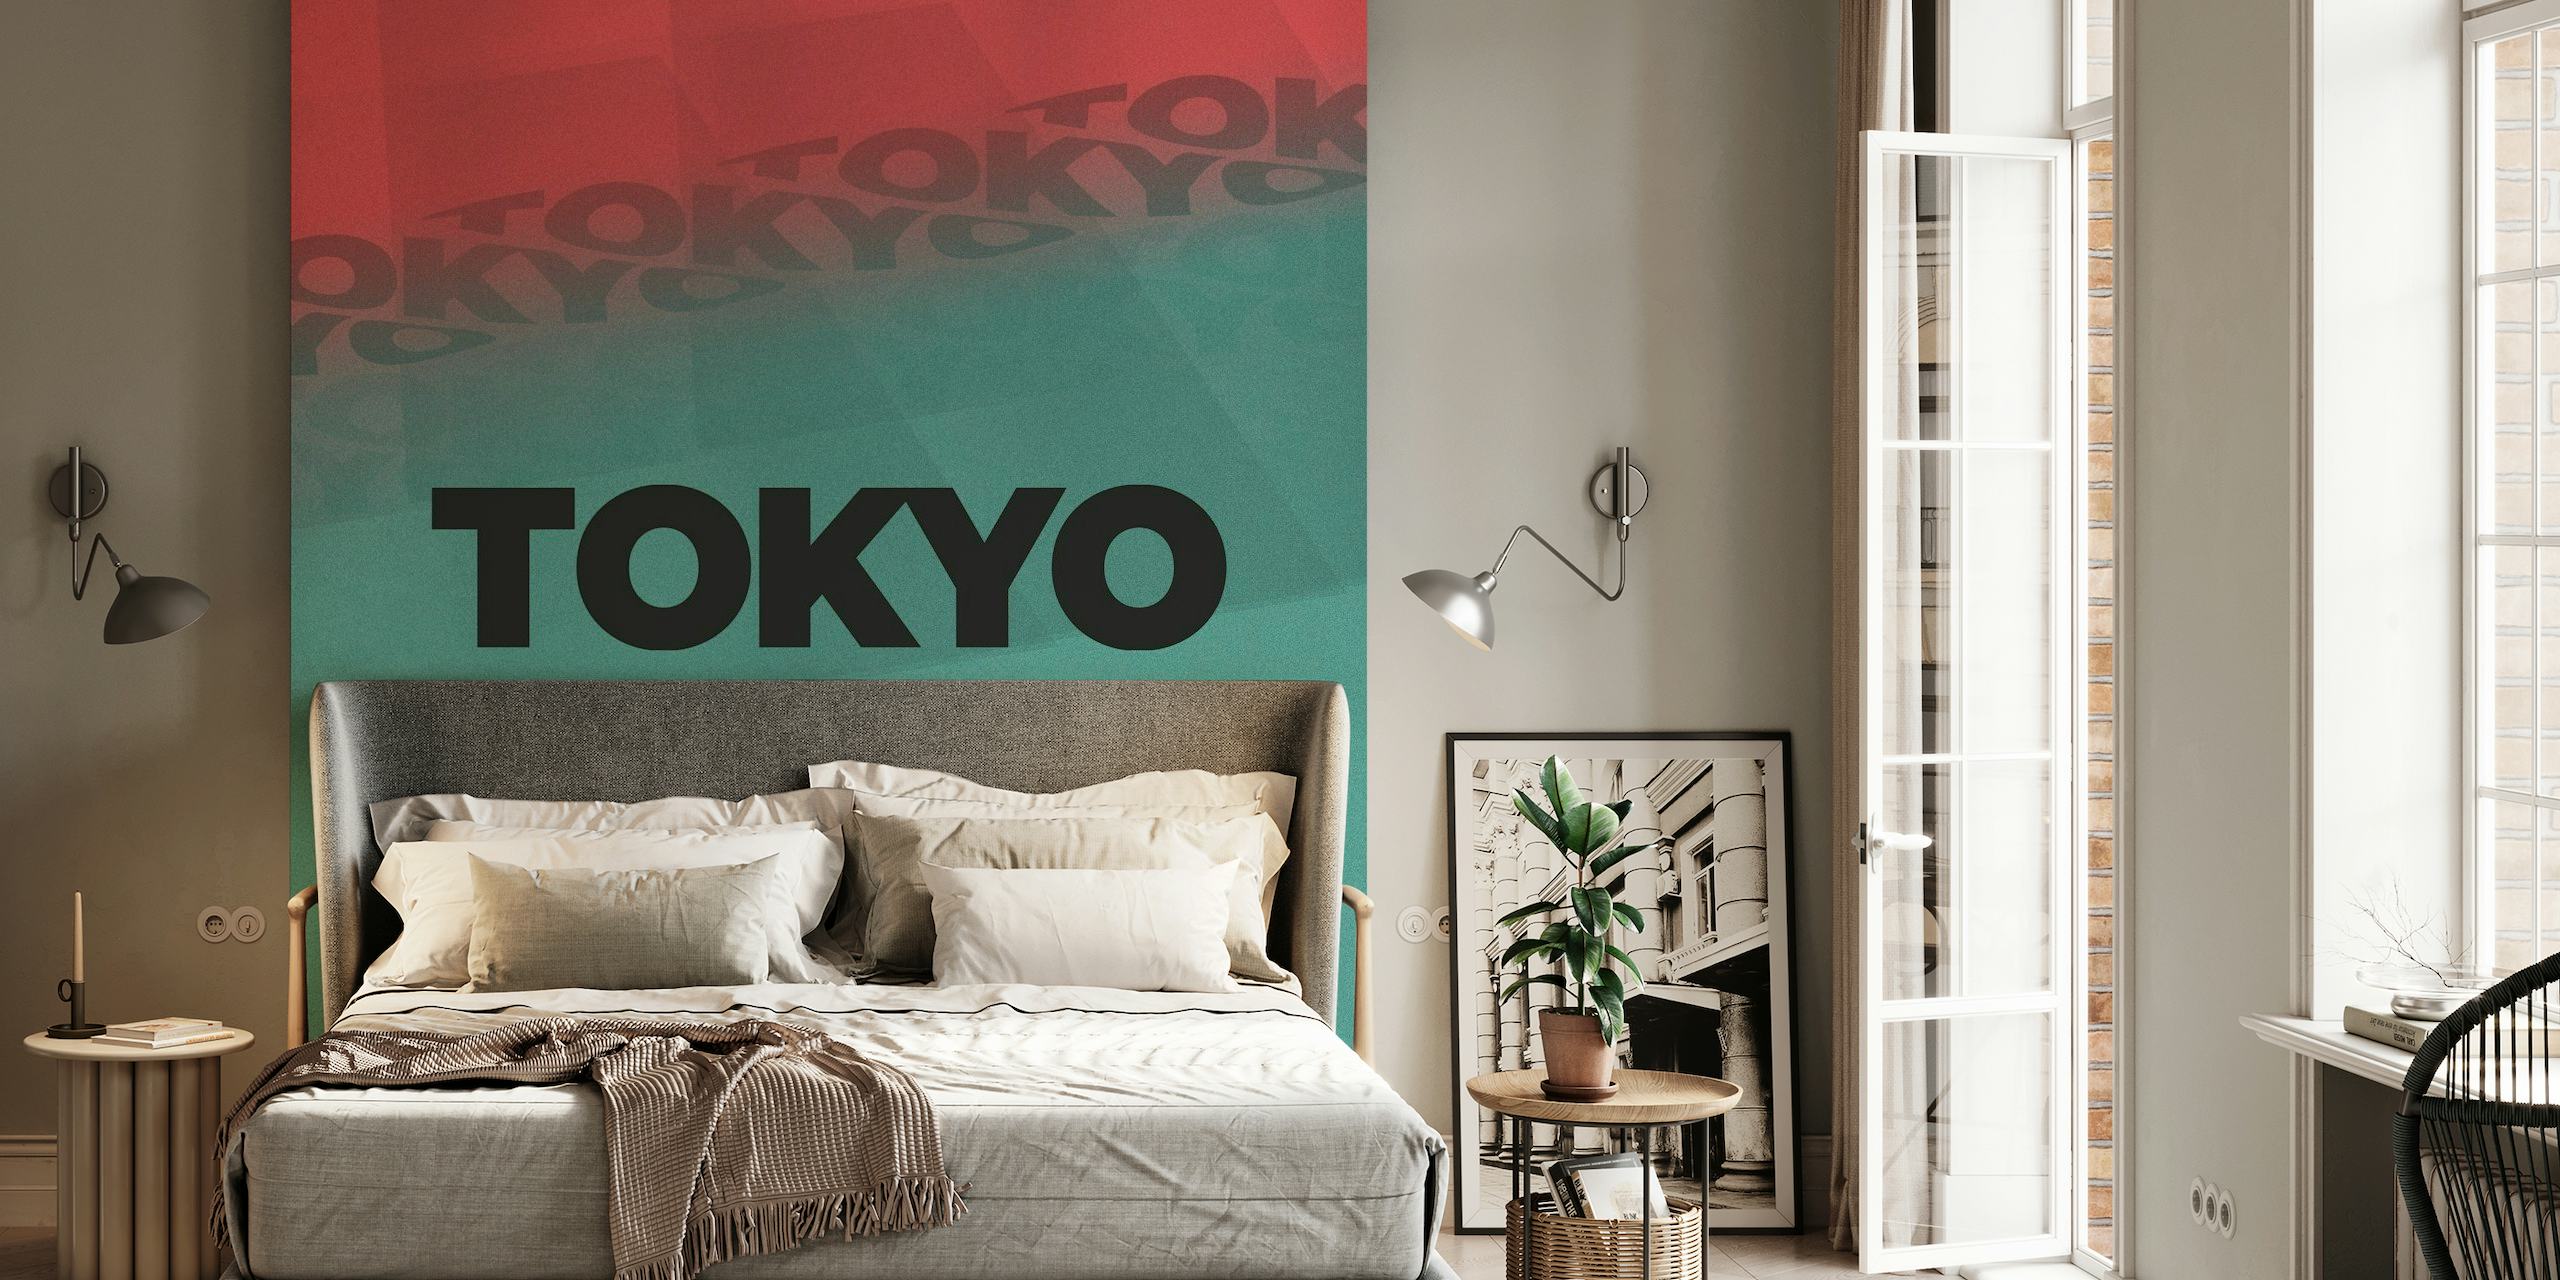 Tokyo v2 papel pintado